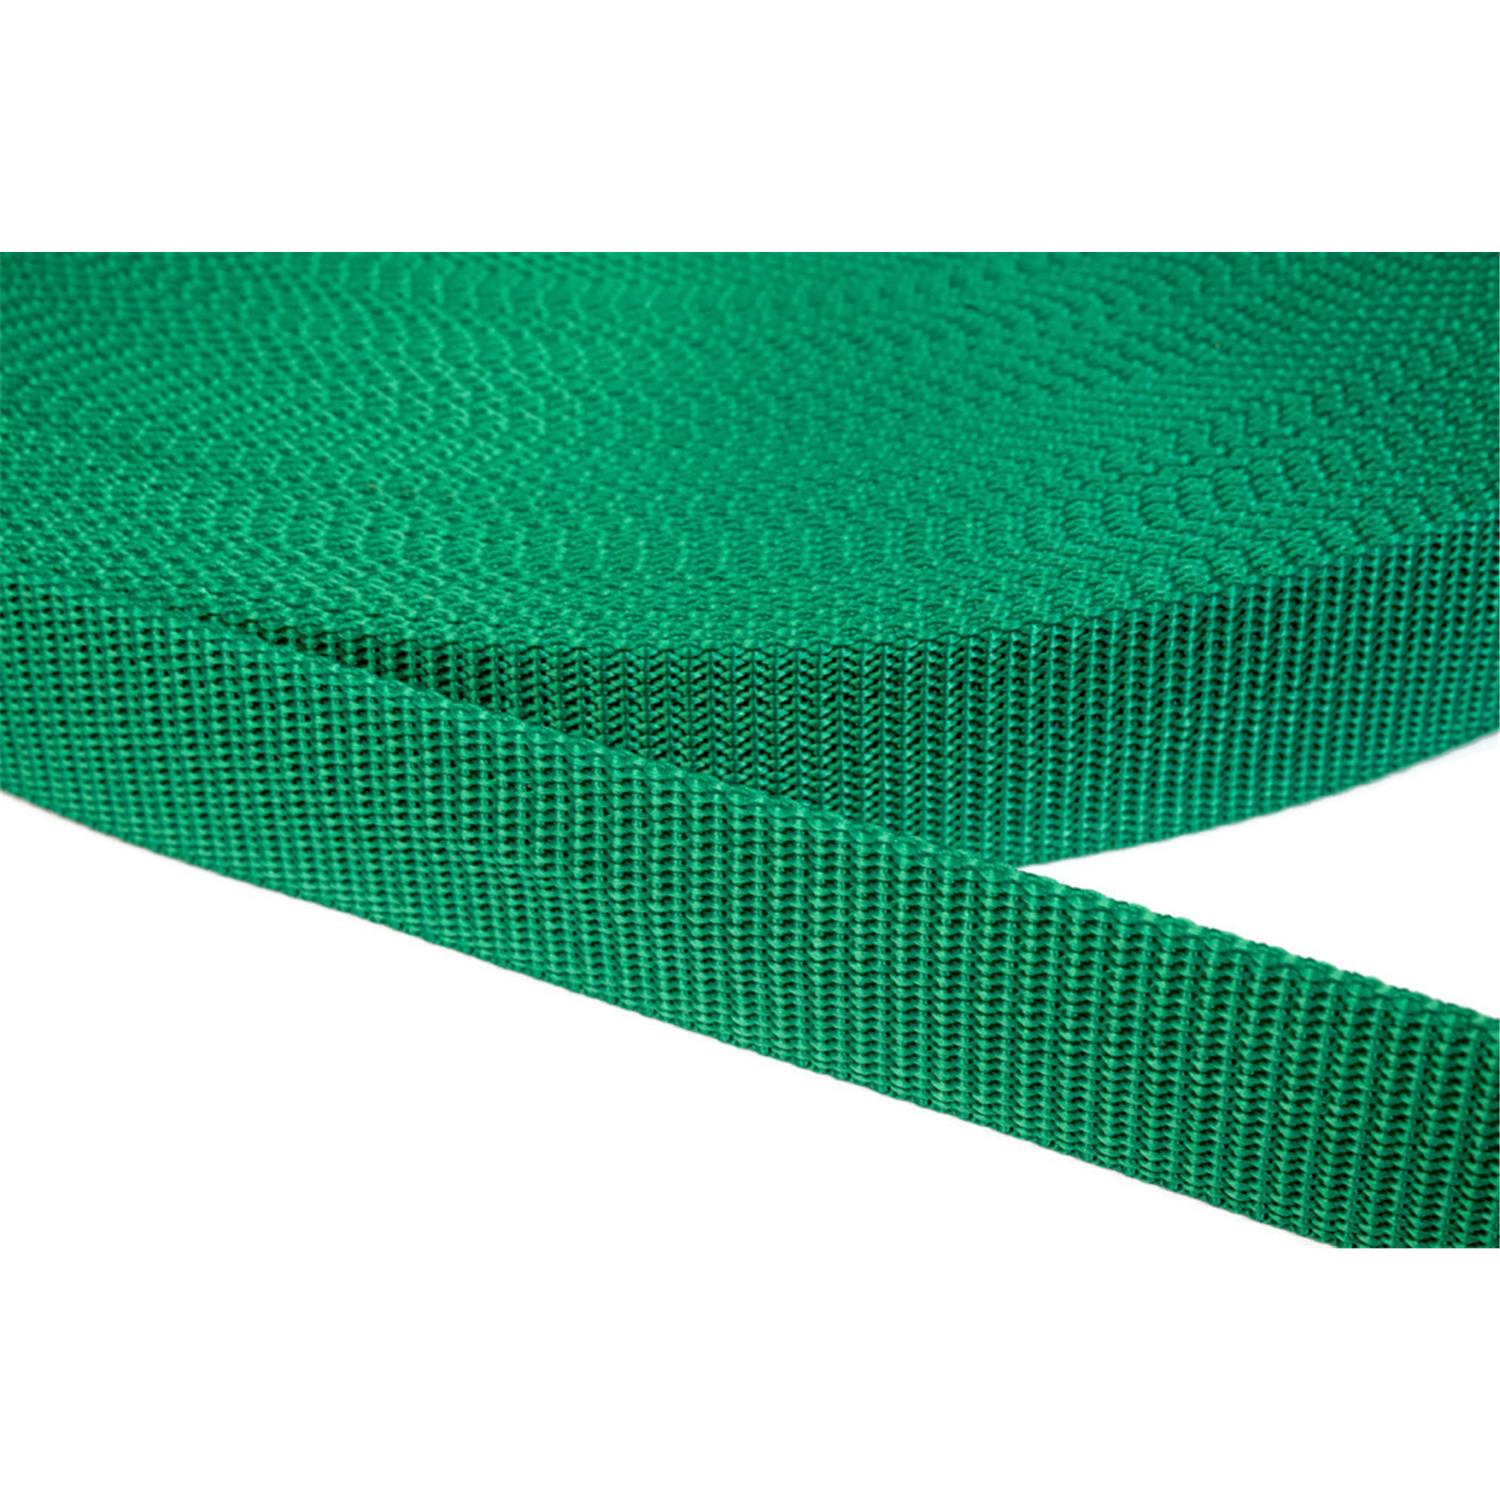 Gurtband 40mm breit aus Polypropylen in 41 Farben 34 - grün 6 Meter